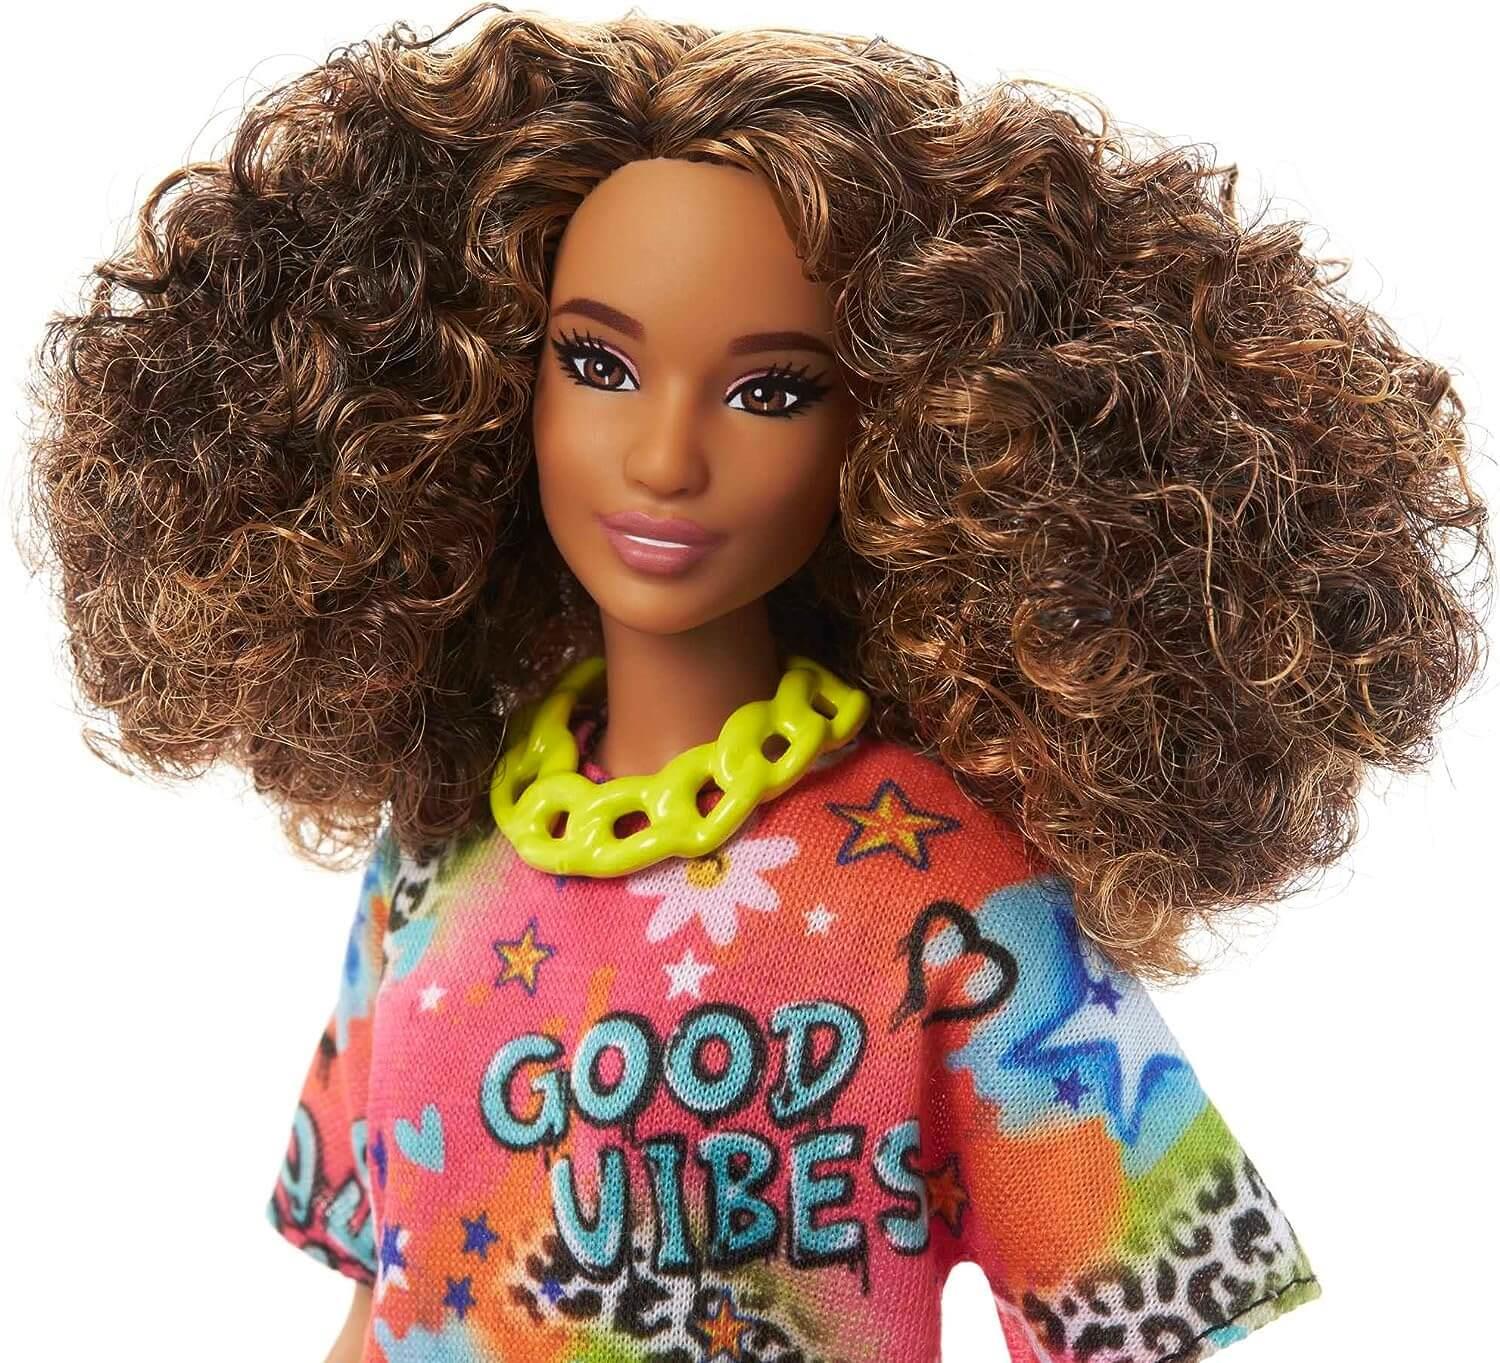 Barbie Fashionista Doll #201